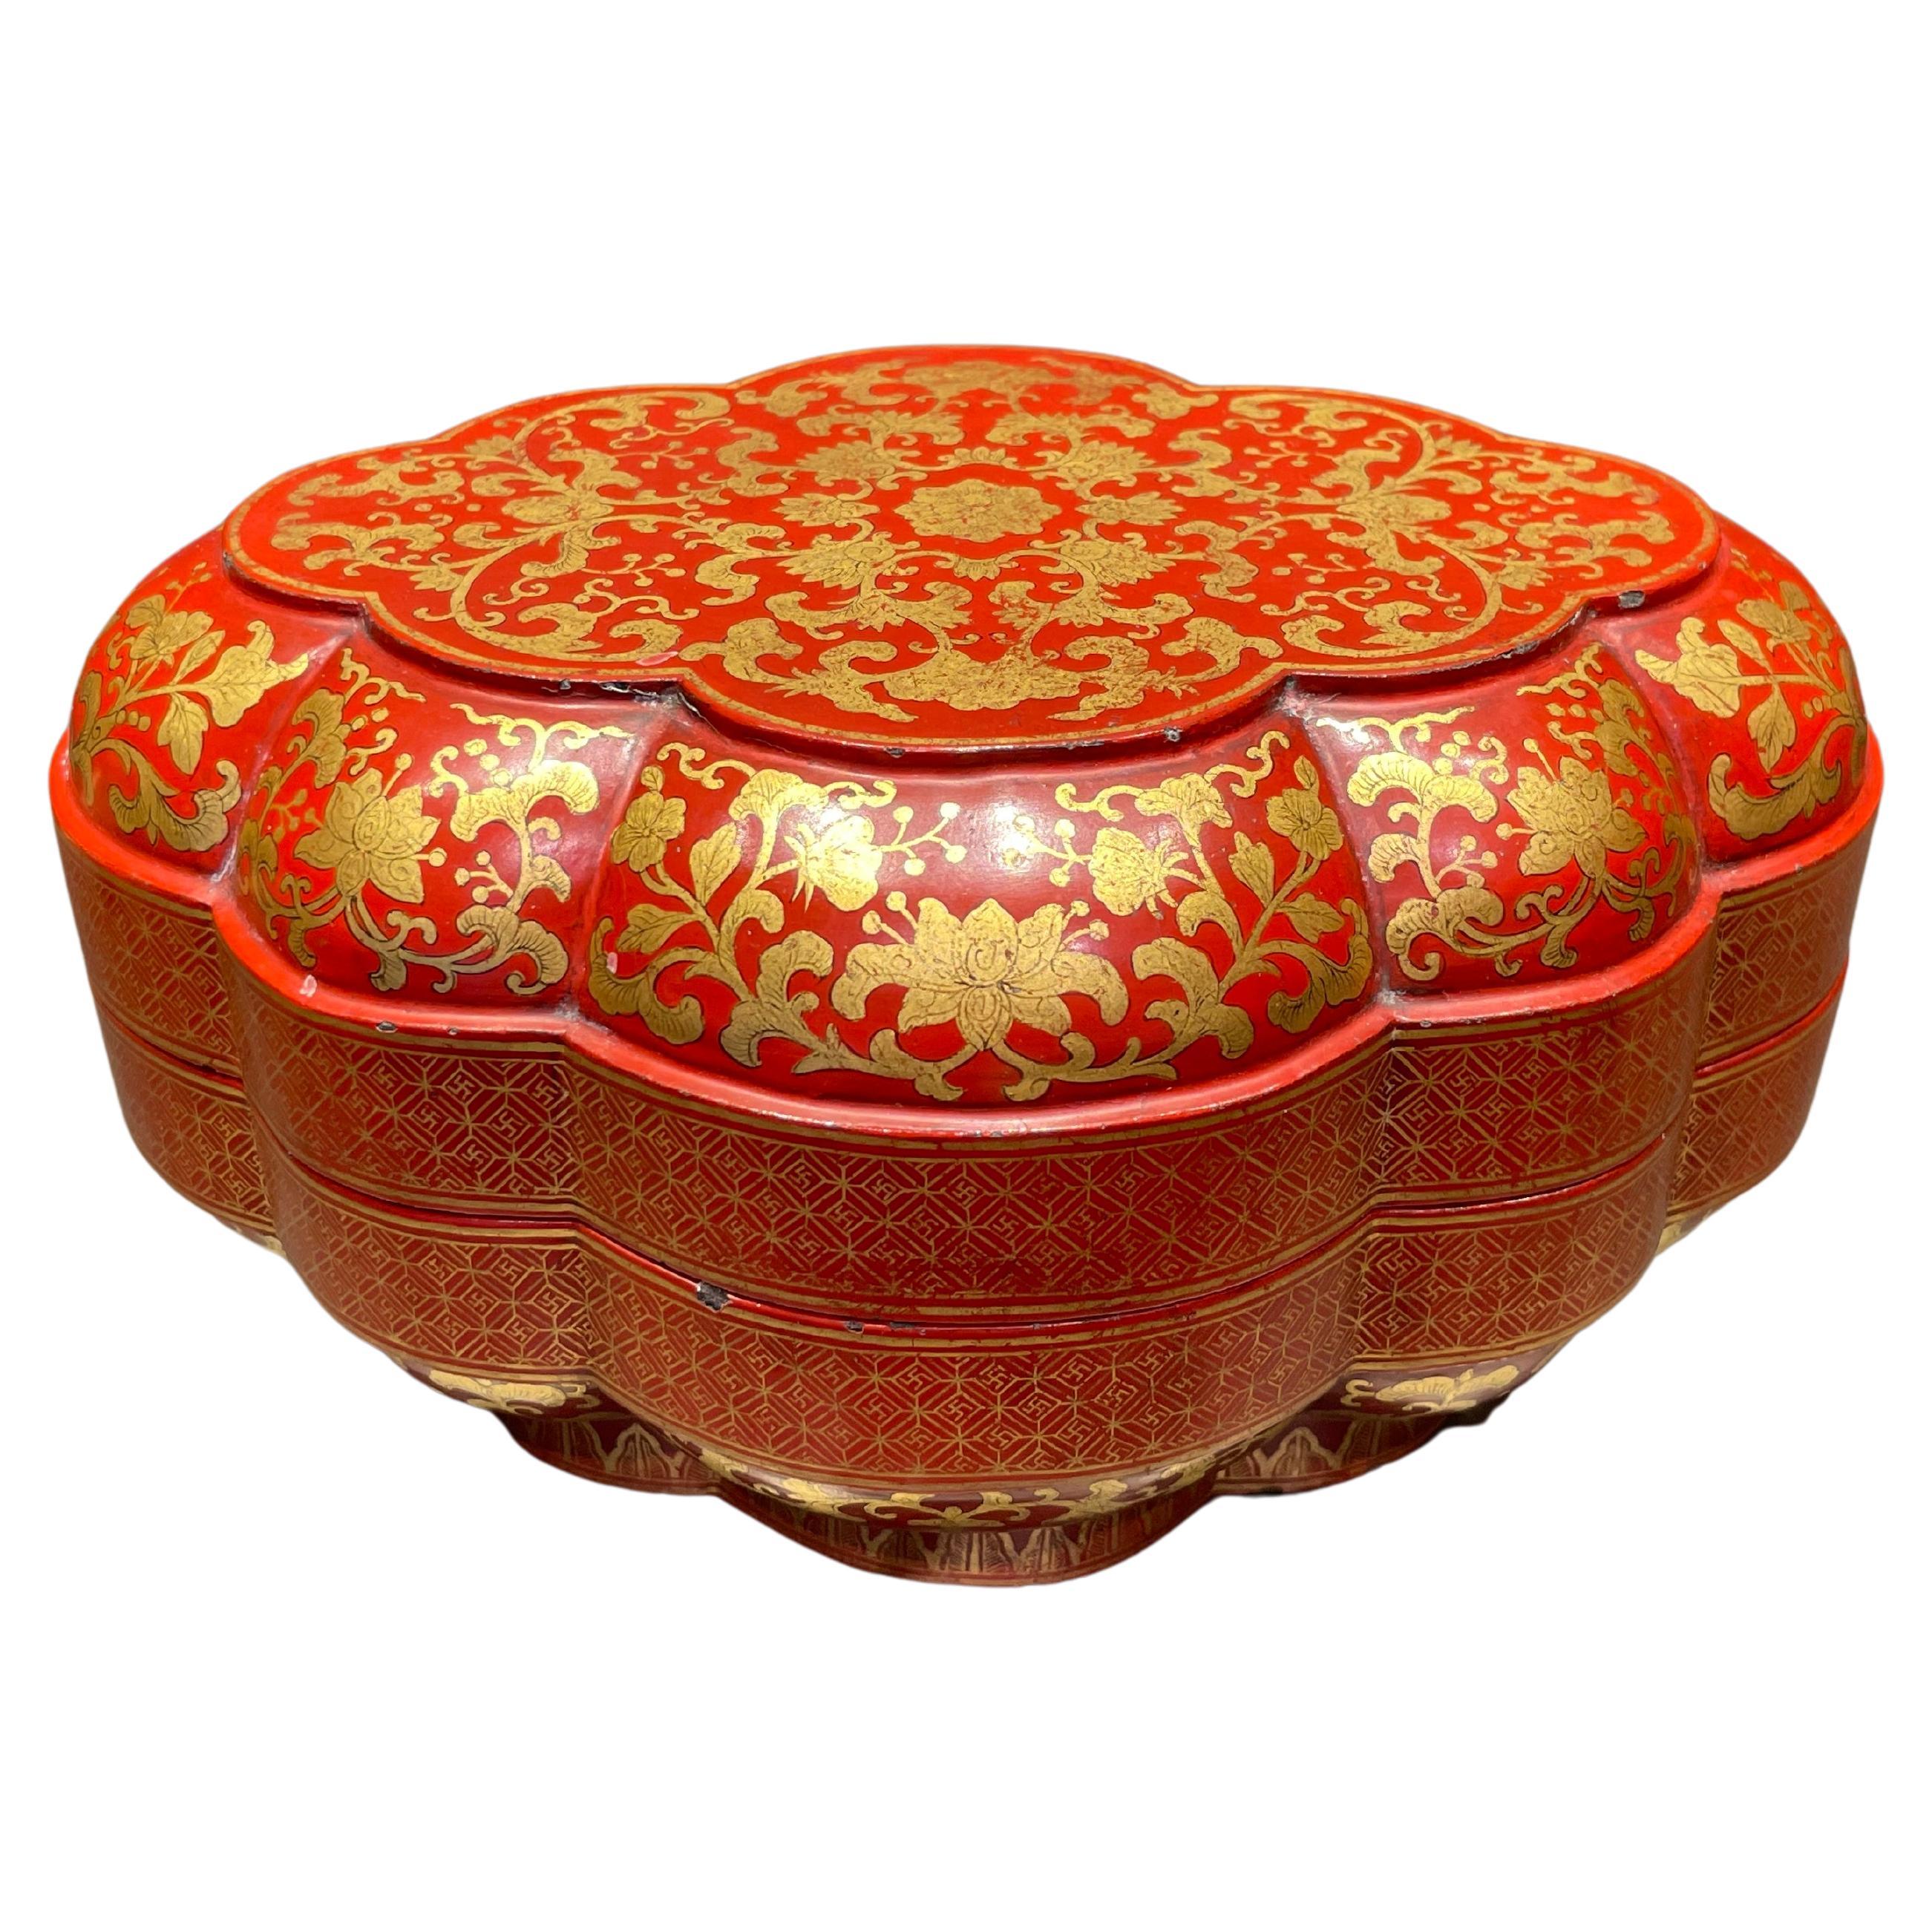 Boîte chinoise ancienne en forme de fleur en laque rouge avec motif de lotus, période Qing